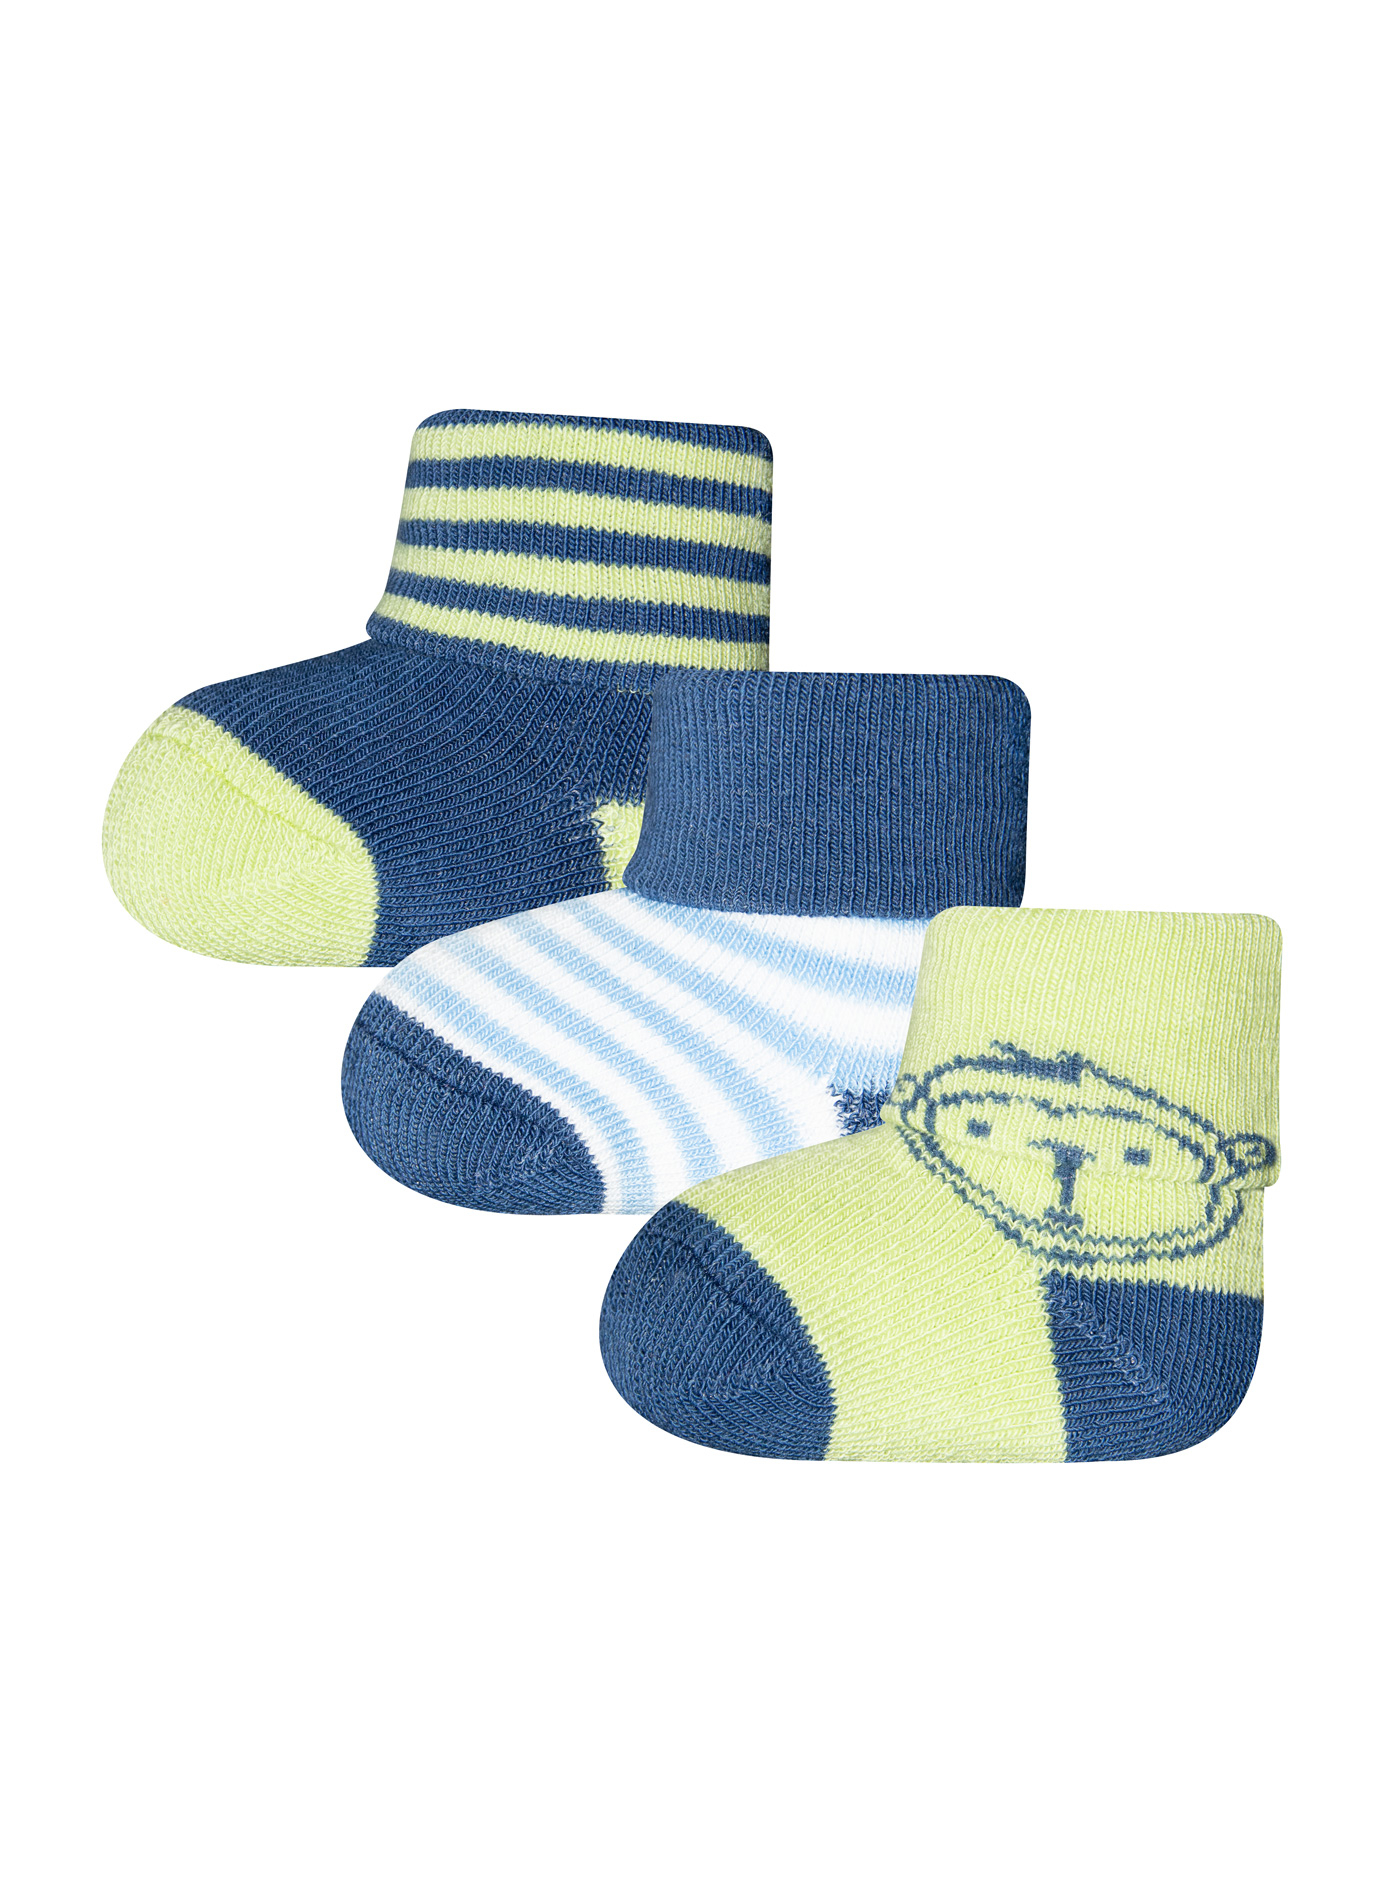 Jungen Erstlings-Socken (Dreierpack) Blau und Grün